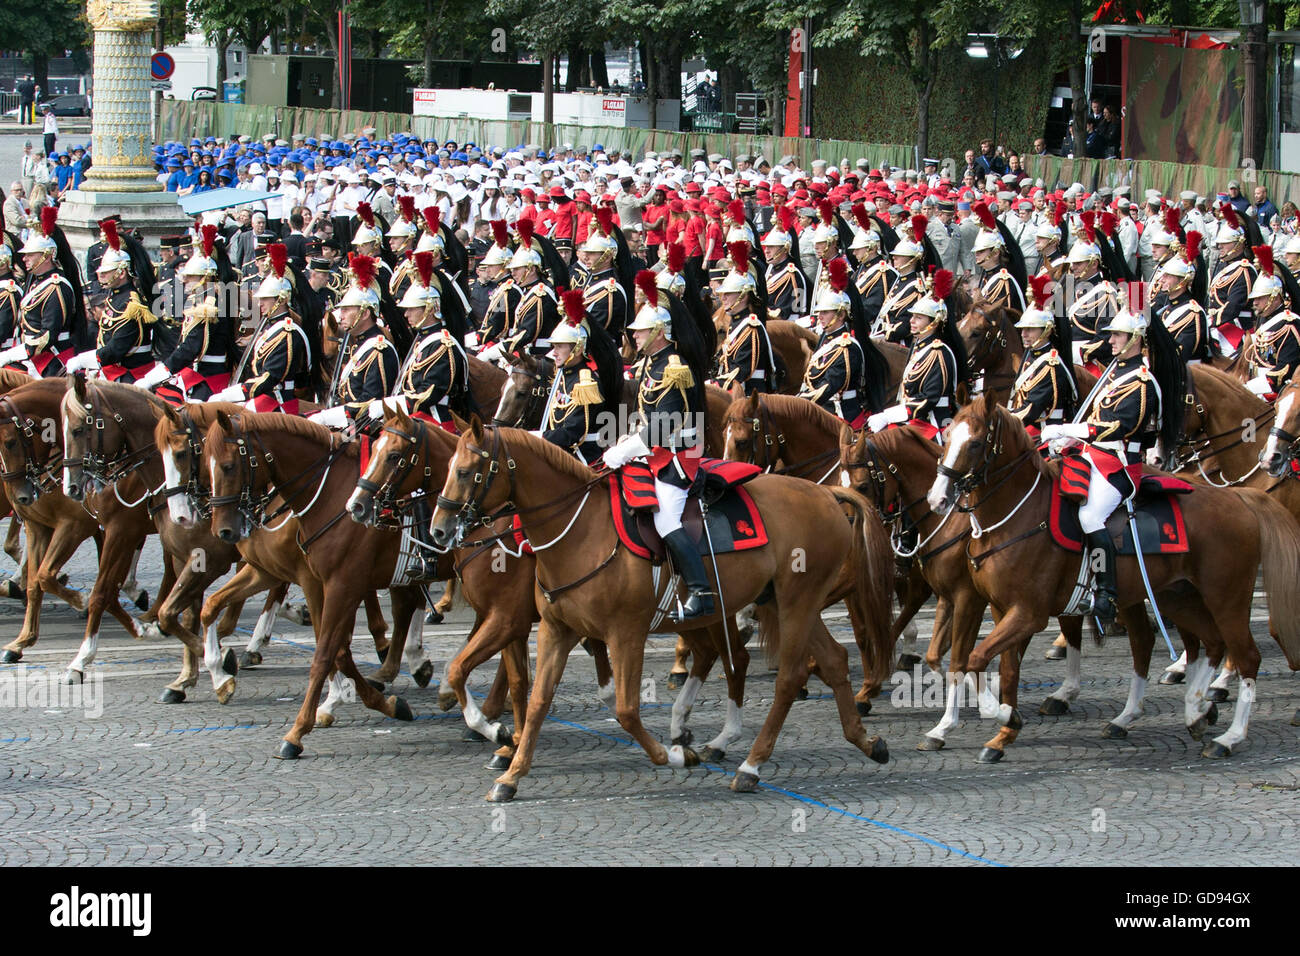 París, Francia. El 14 de julio, 2016. La guardia republicana marzo anual durante el desfile militar del día de la Bastilla en París, Francia, el 14 de julio de 2016. Crédito: Alan Wilson/Xinhua/Alamy Live News Foto de stock